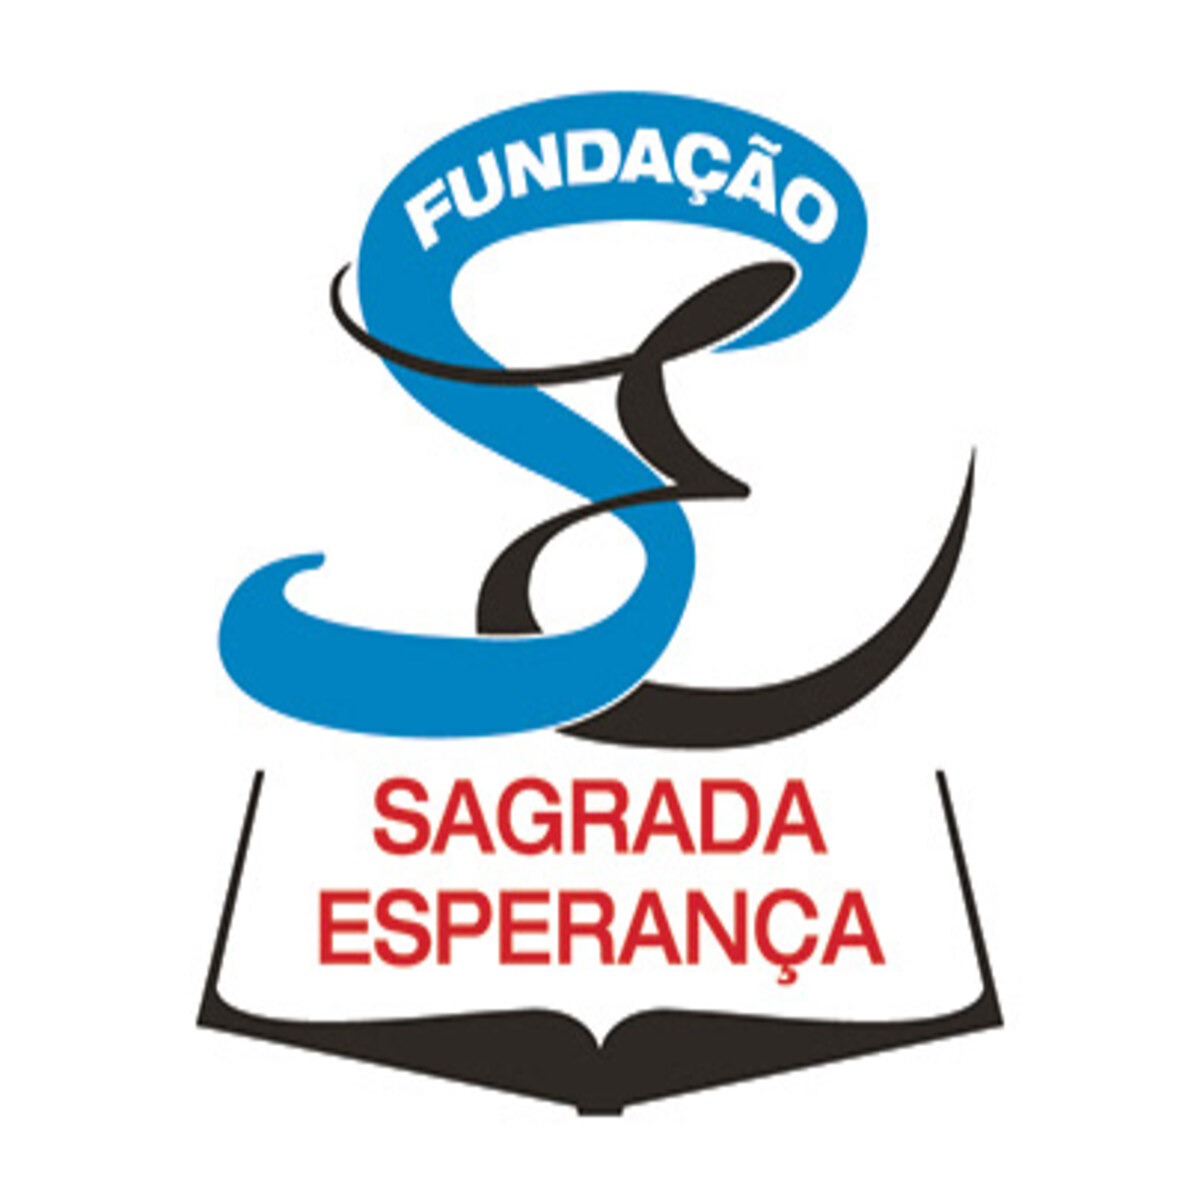 Fundacao_Sagrada_Esperanca